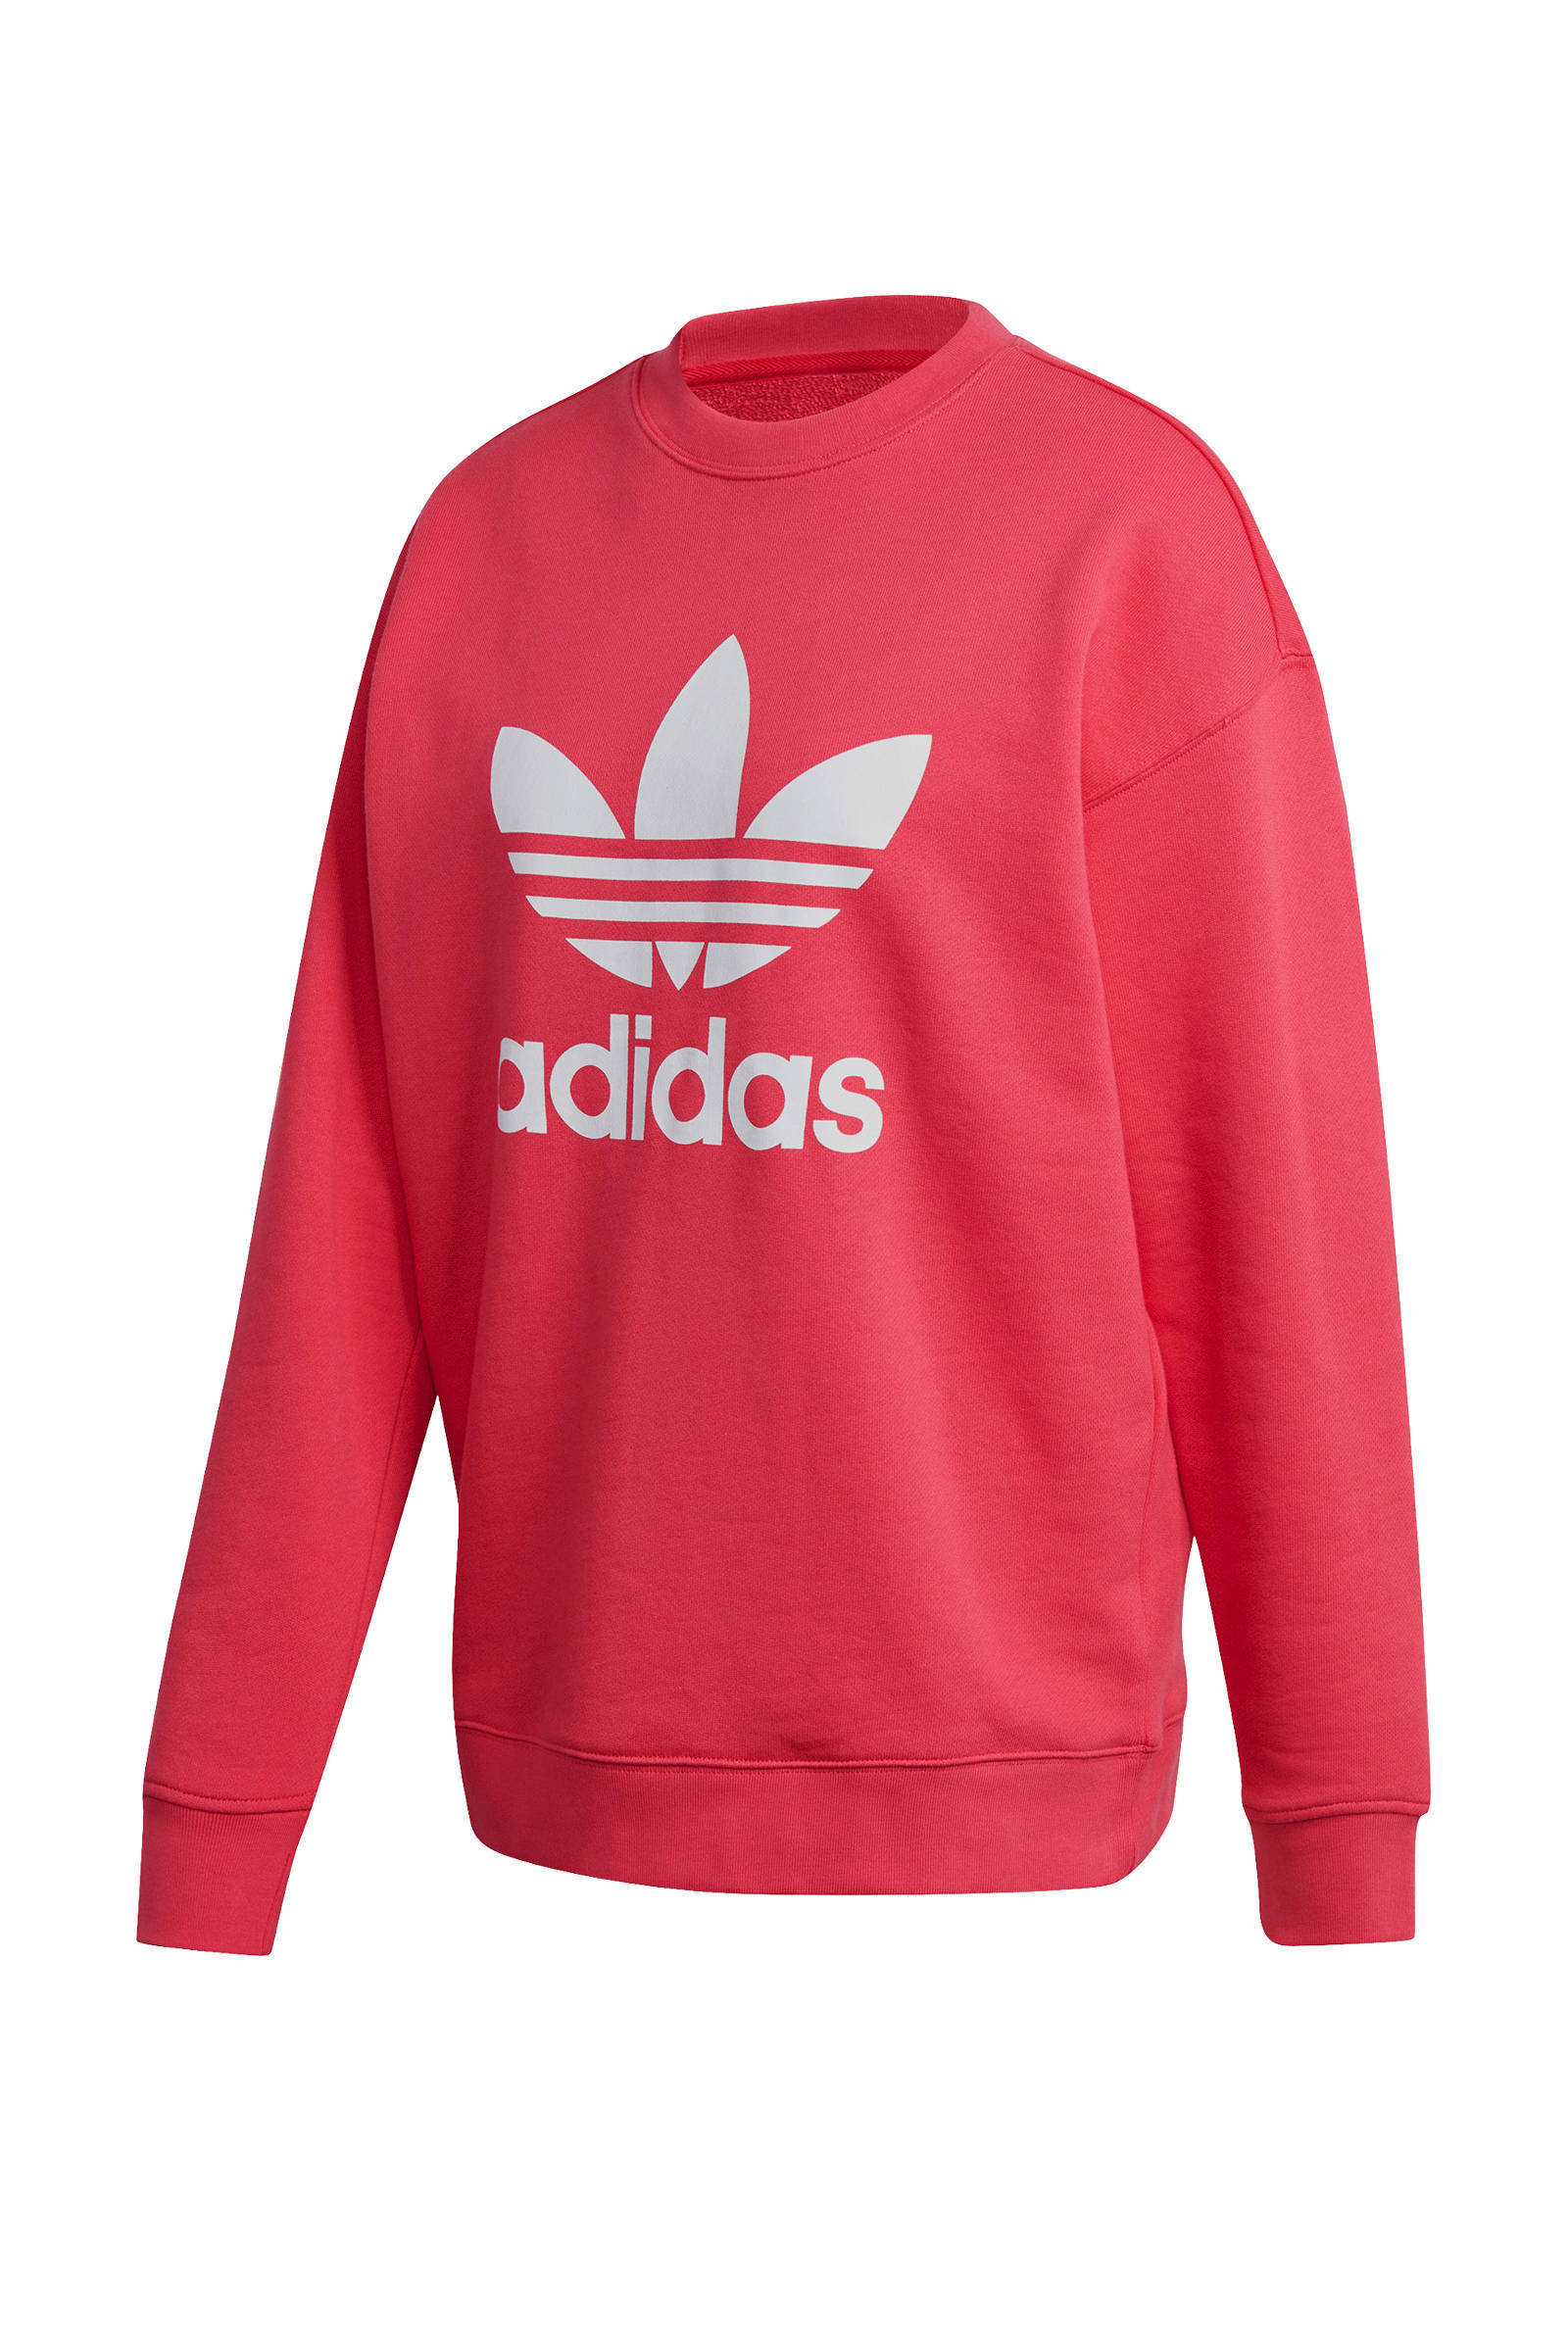 Adidas Originals Adicolor sweater roze online kopen